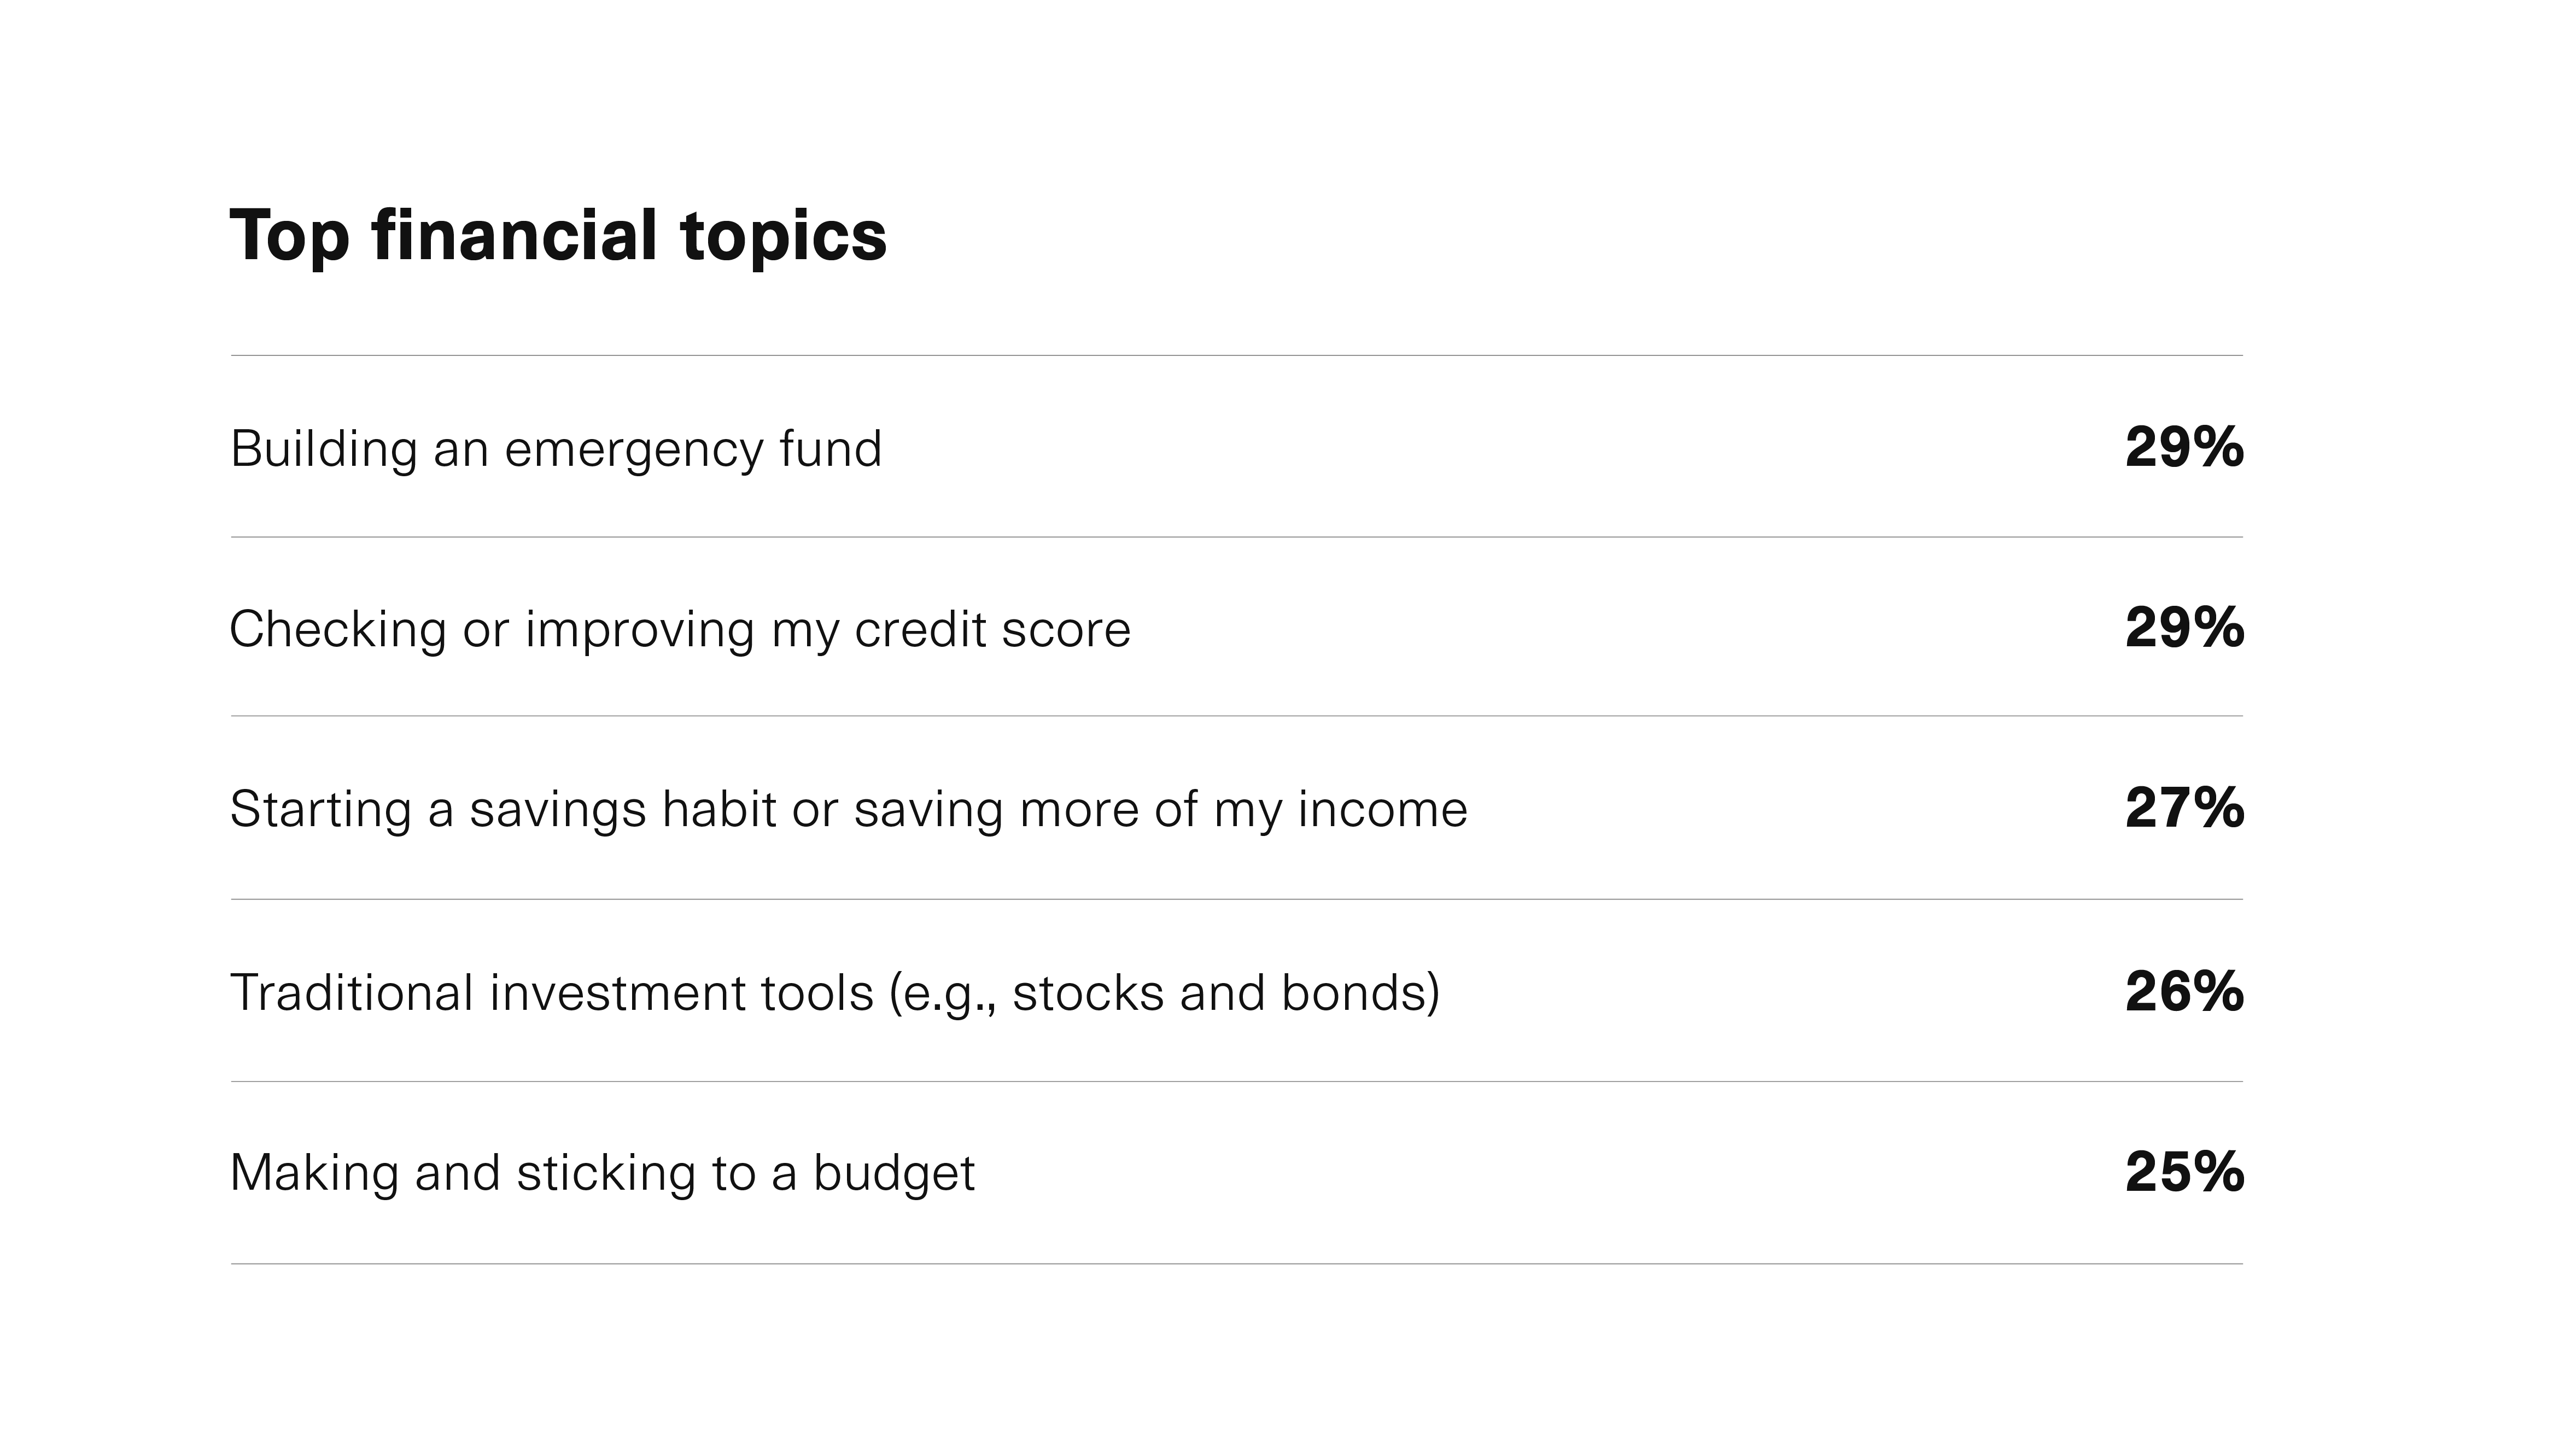 Top financial topics